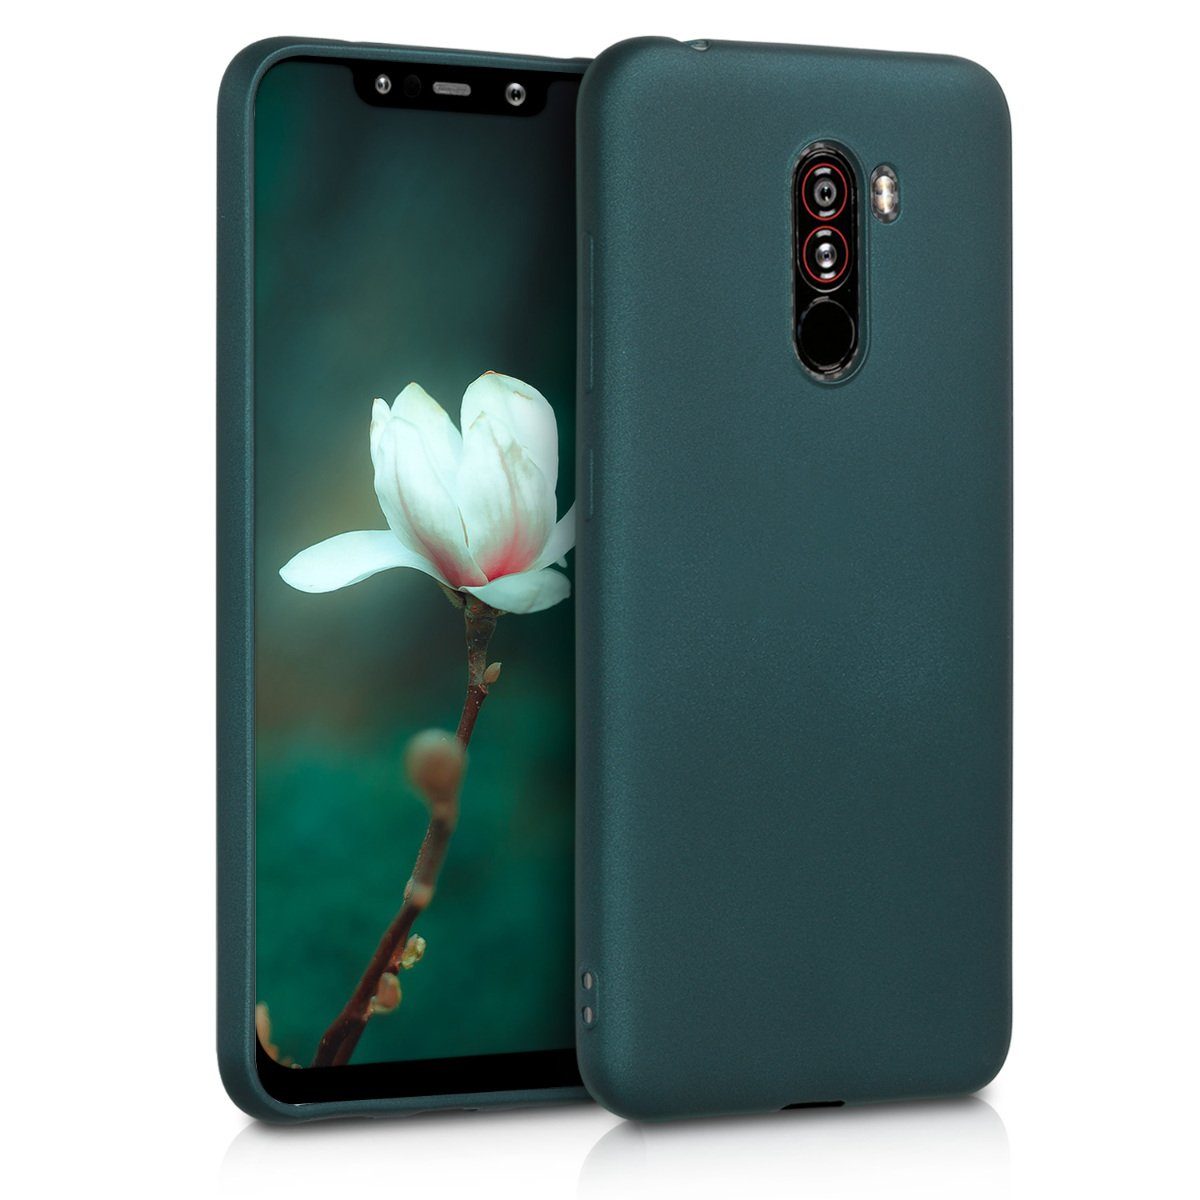 kwmobile Handyhülle Case für Xiaomi Pocophone F1, Hülle Silikon metallisch schimmernd - Handyhülle Cover